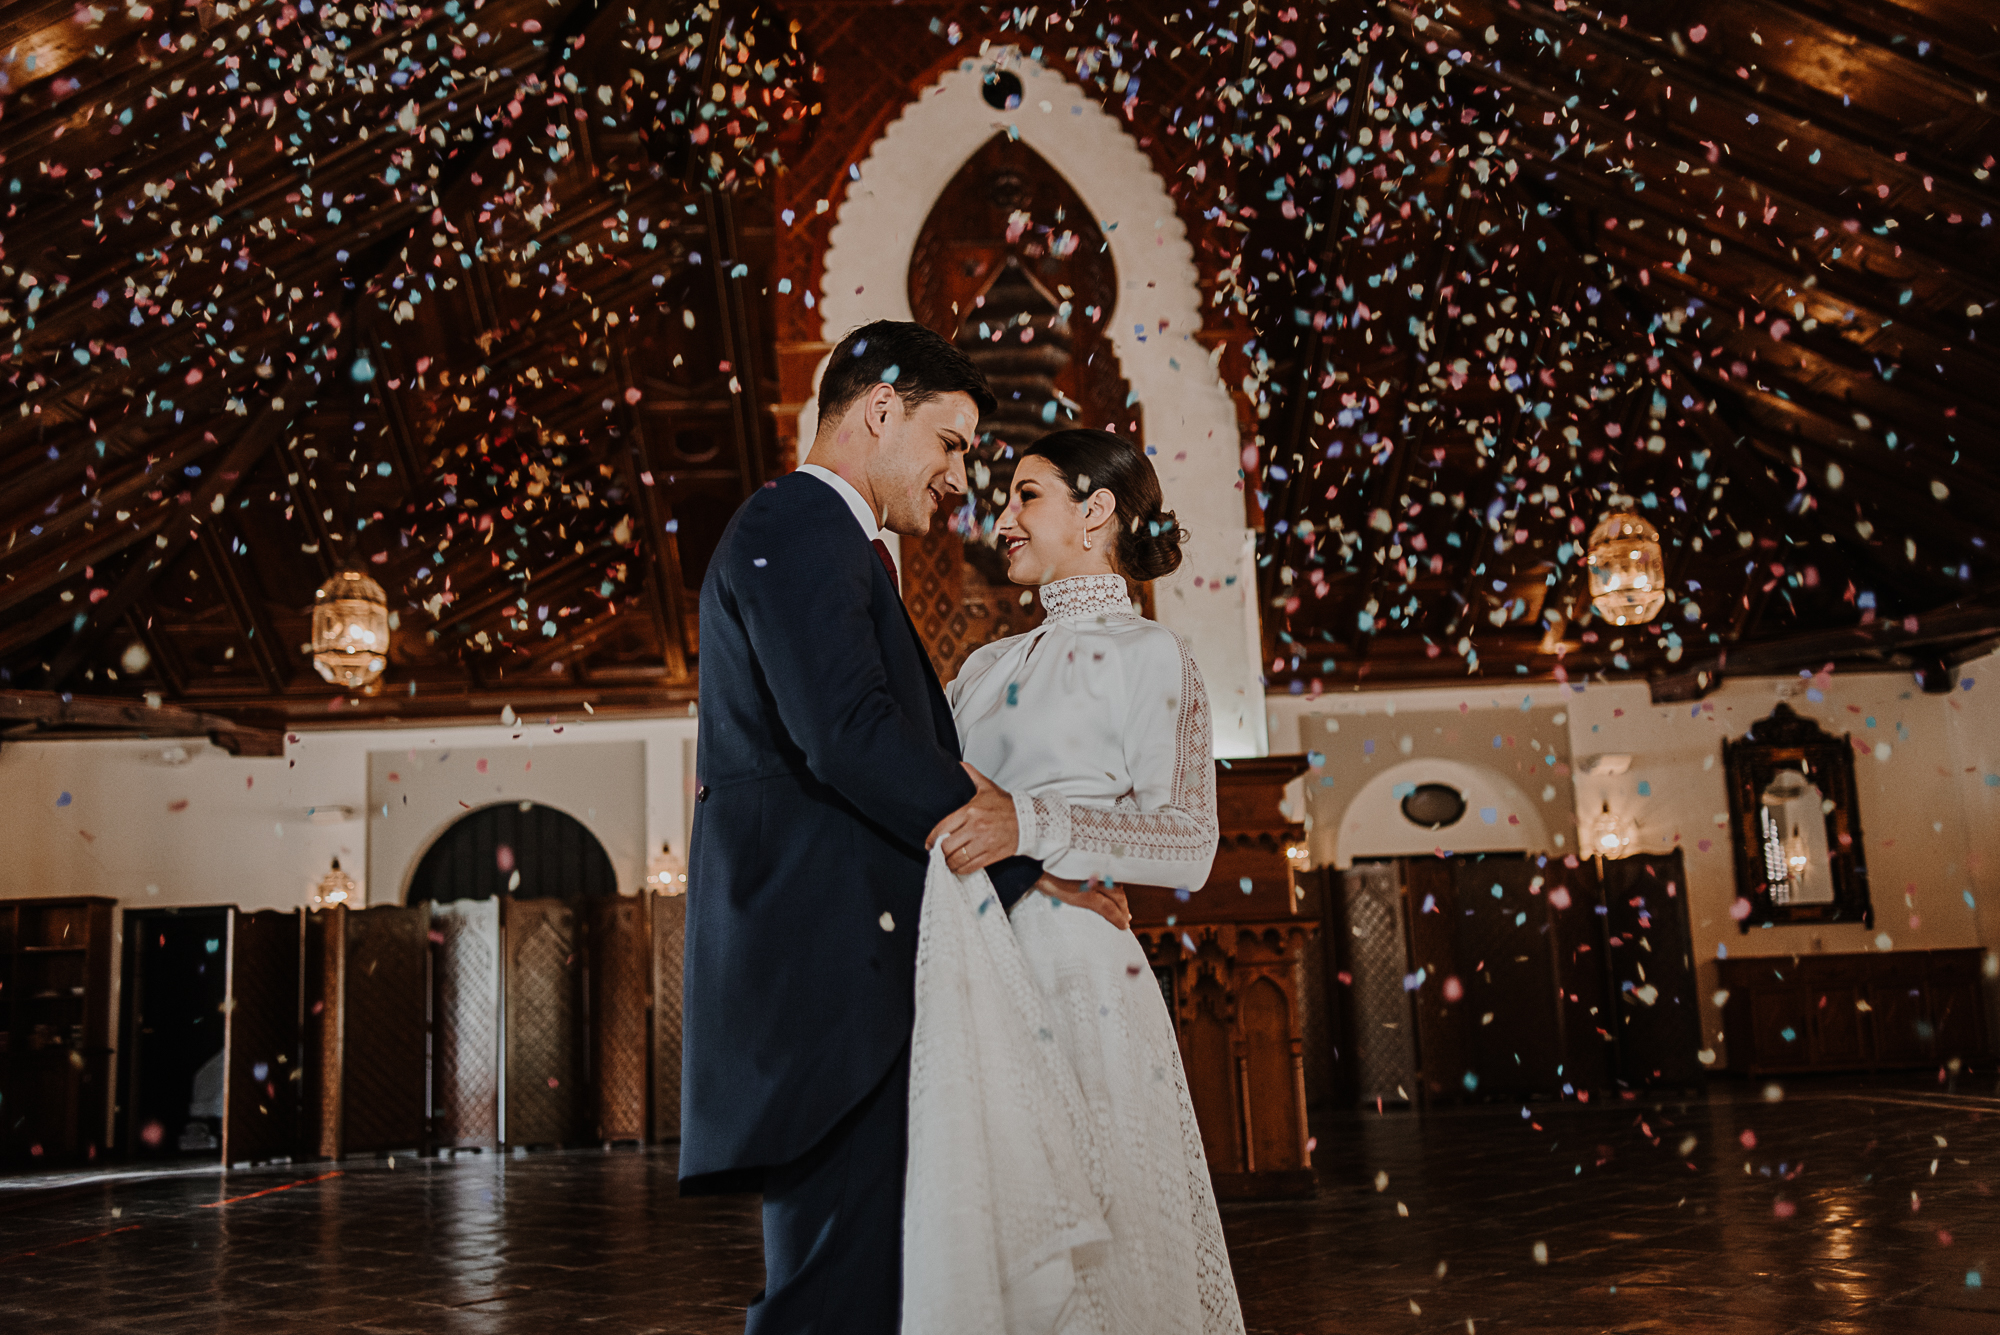 Pareja de recién casados bailando bajo una lluvia de confeti